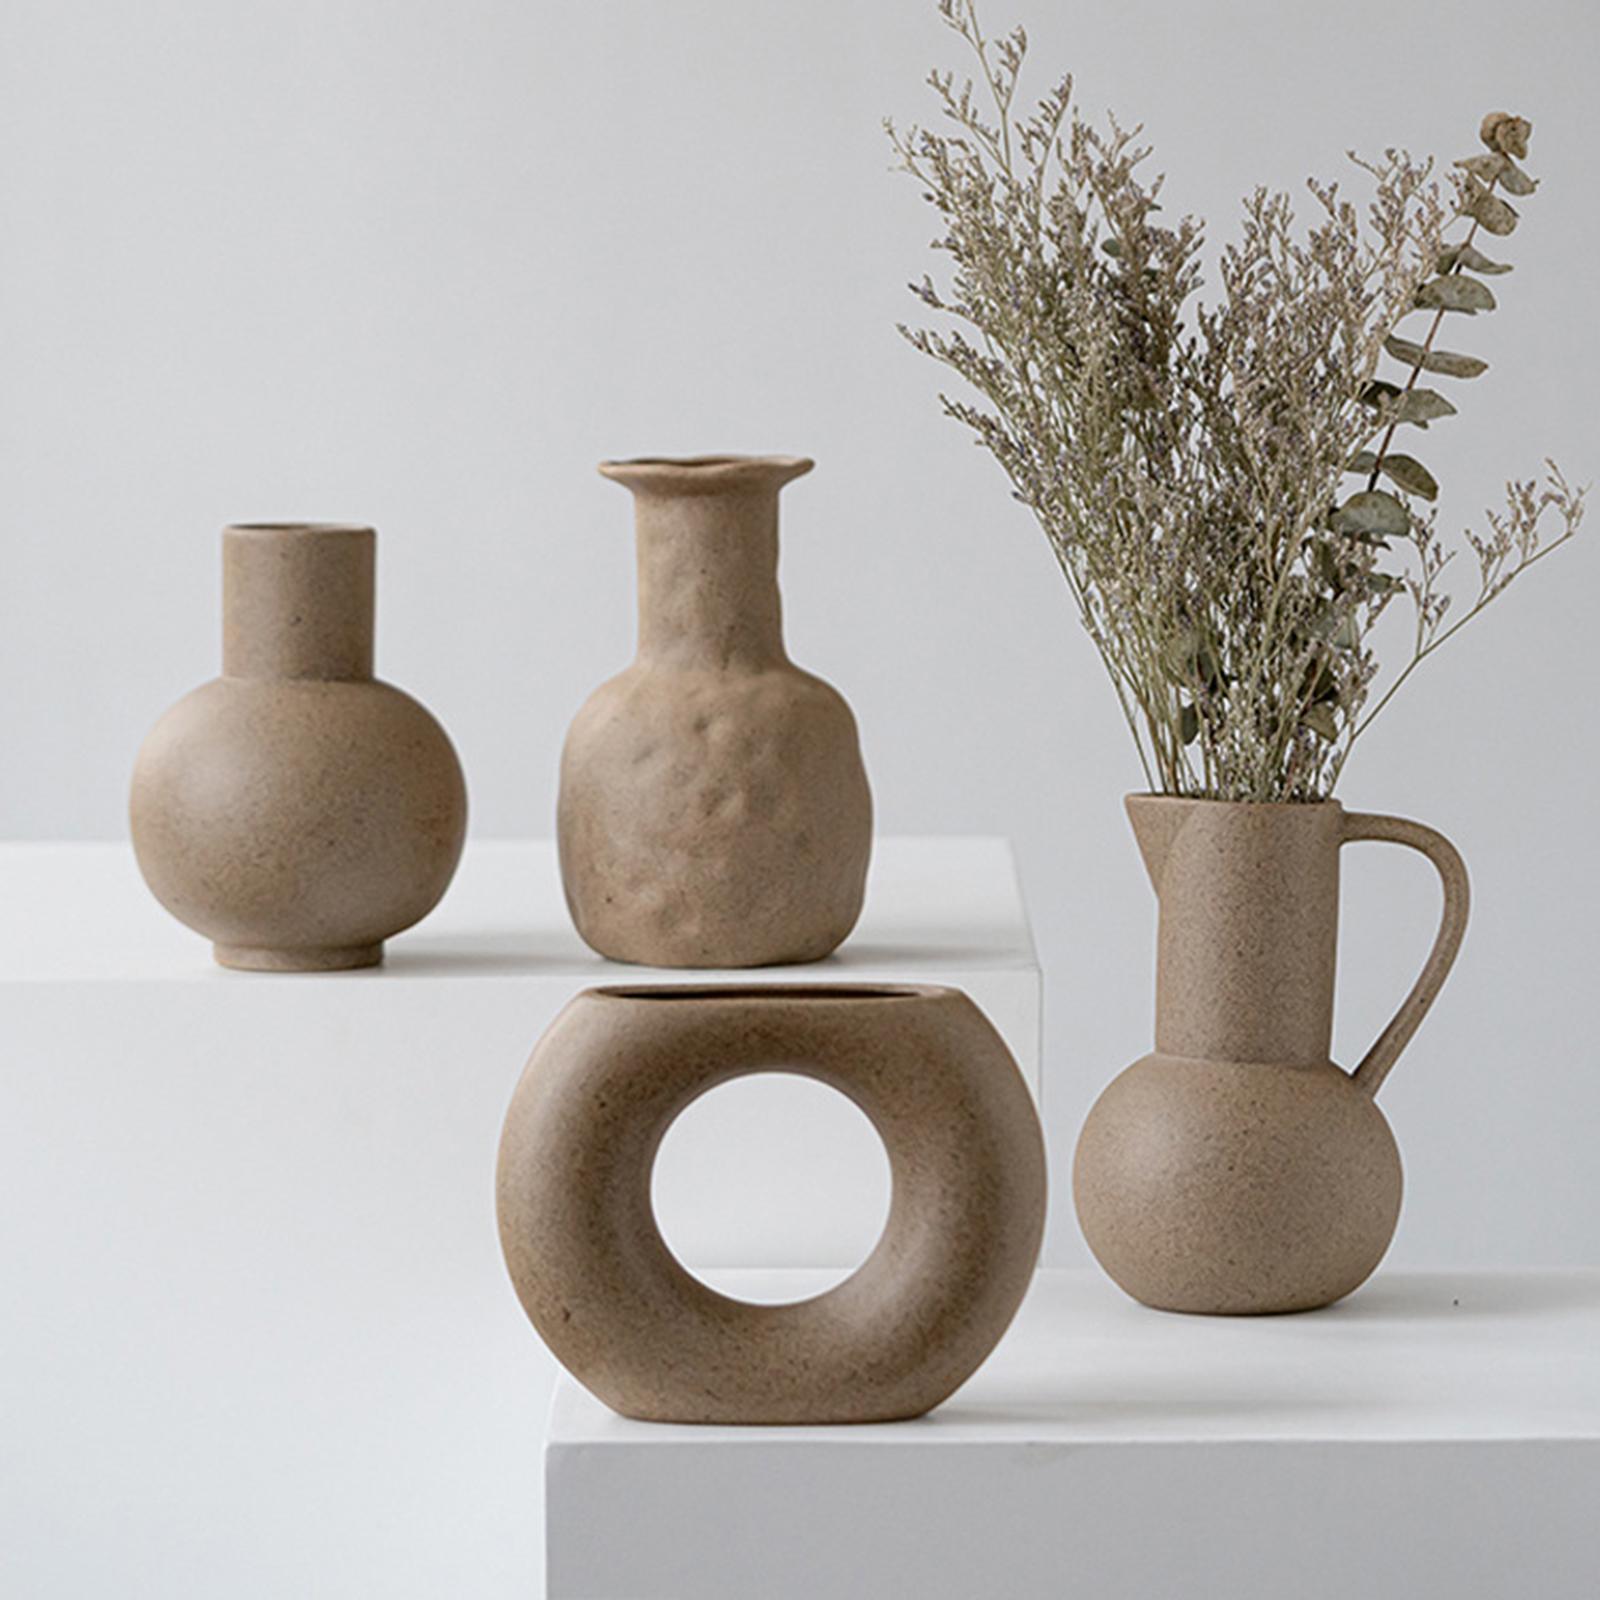 Rough Ceramic Vase Modern Minimalist Flower Vase for Room Floral Arrangements Decoration